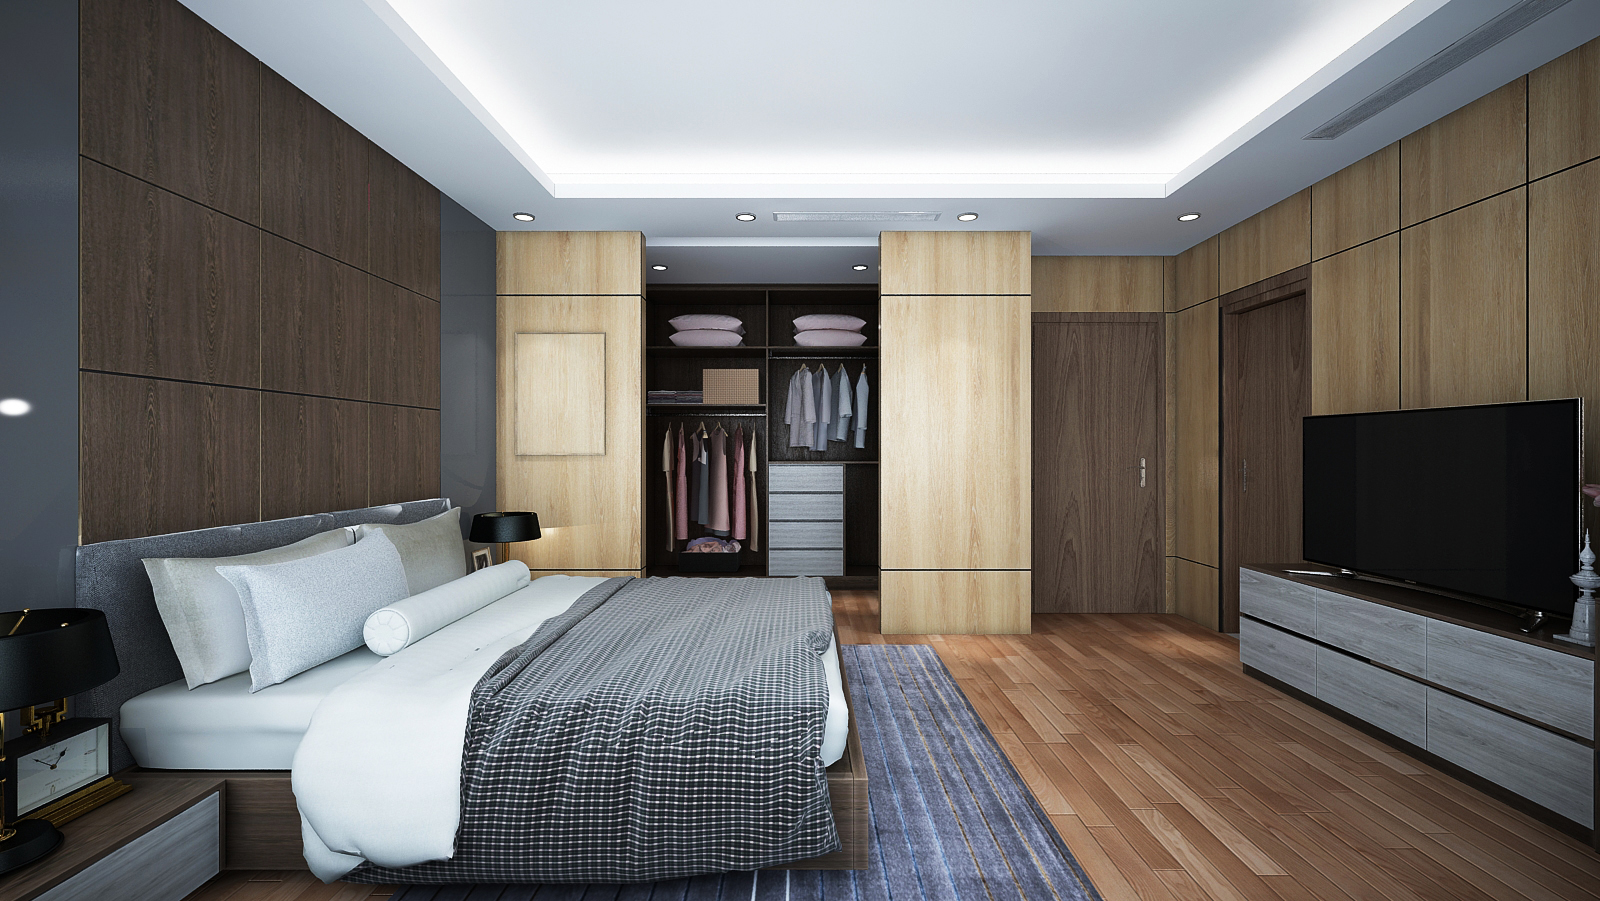 Mẫu phòng ngủ master rộng rãi, sử dụng chất liệu gỗ chủ đạo mang lại cảm giác ấm áp, thư giãn - vốn rất cần cho không gian ngủ nghỉ.